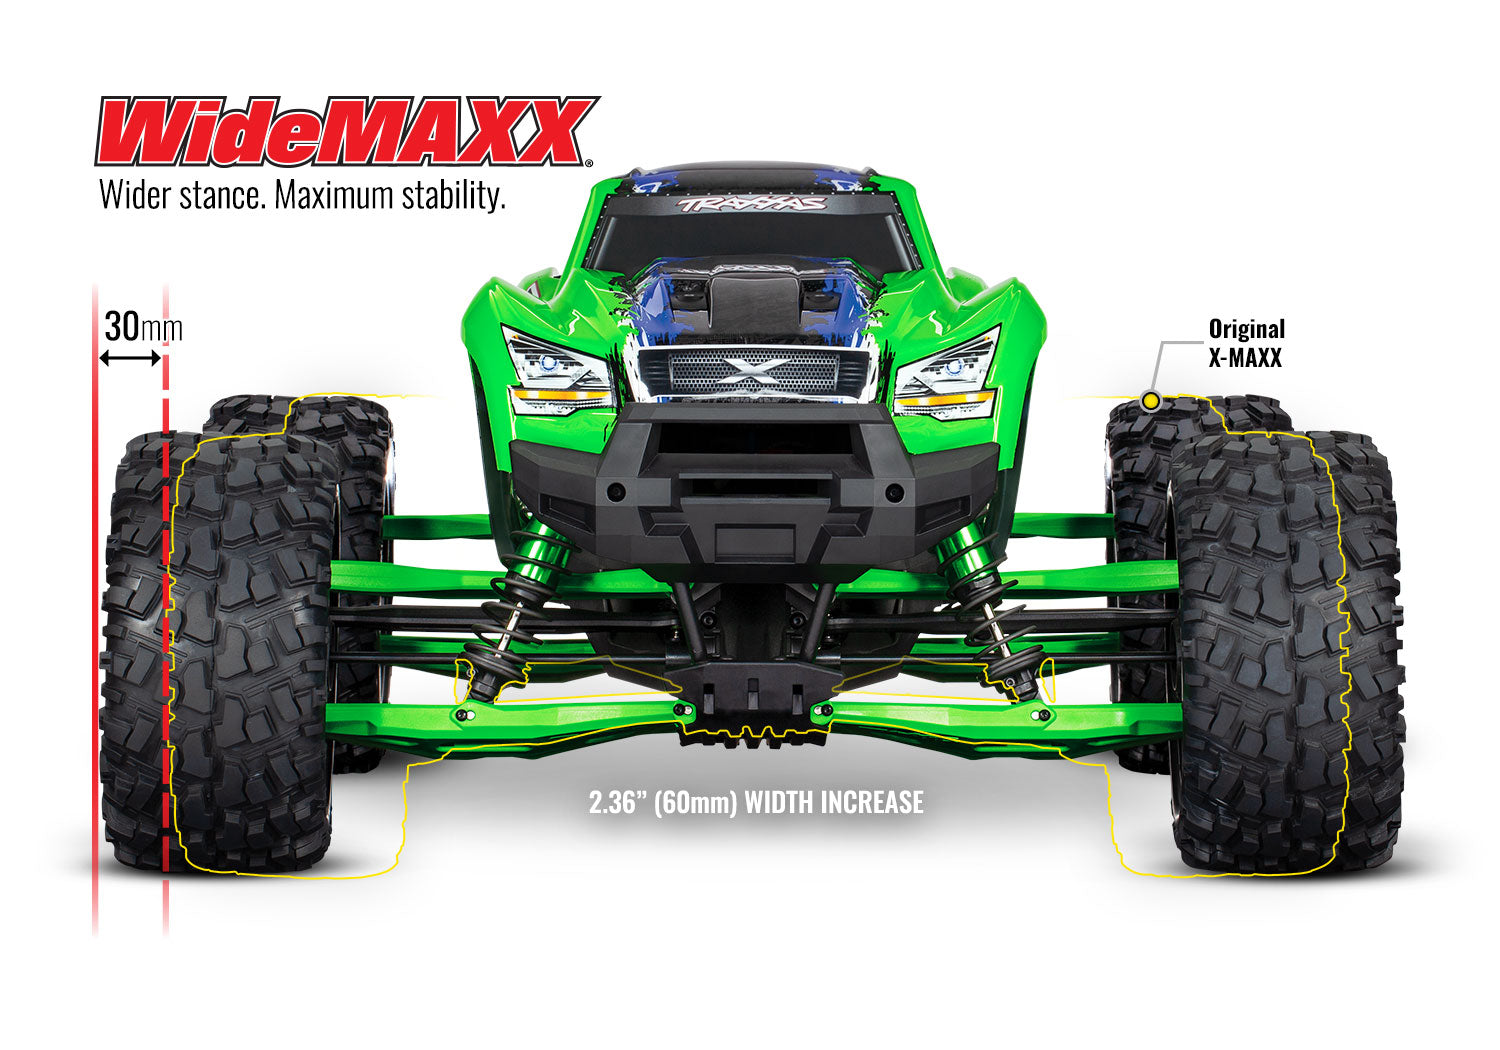 Traxxas X-Maxx WideMaxx Kit (Assorted Colors)